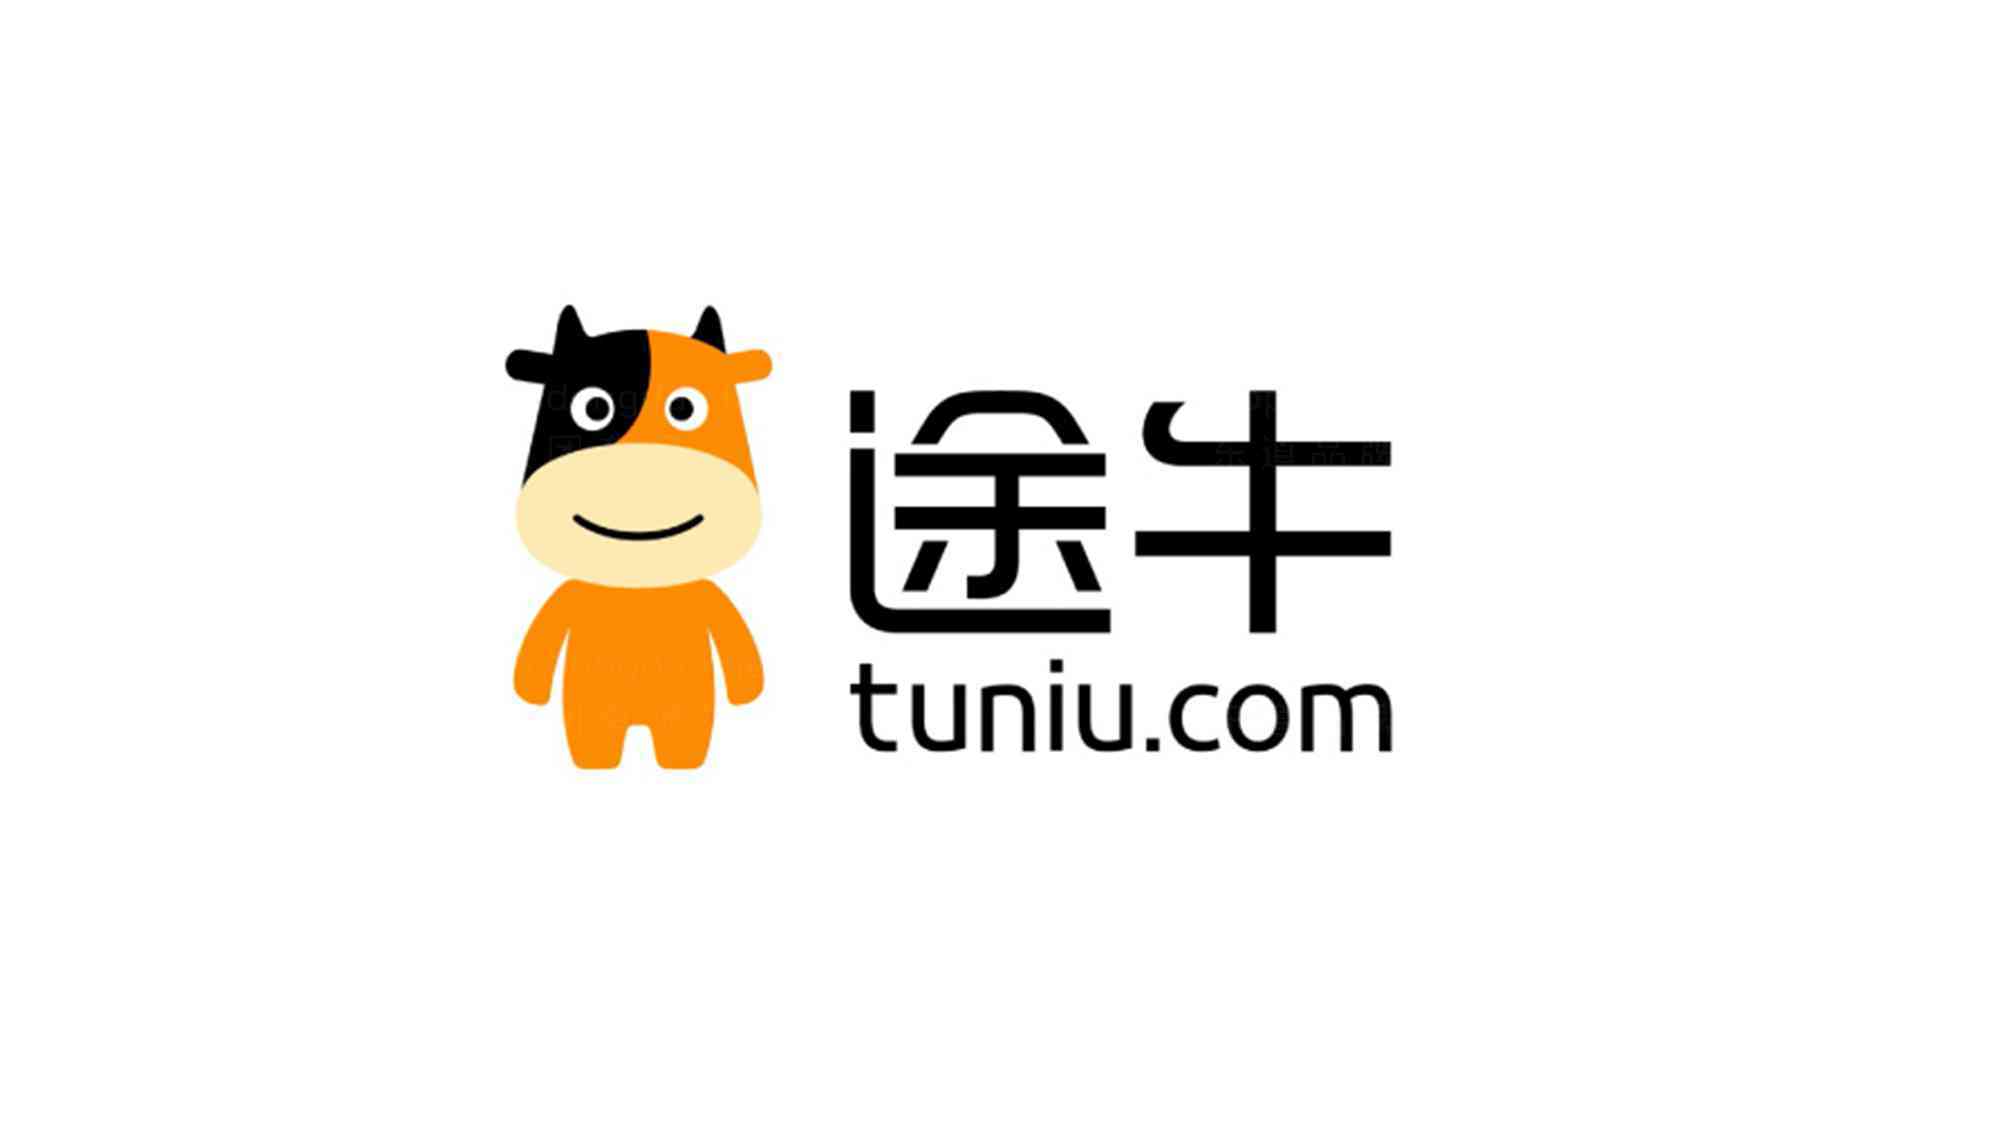 途牛旅游网logo设计_途牛旅游网旅游公司logo设计图片素材